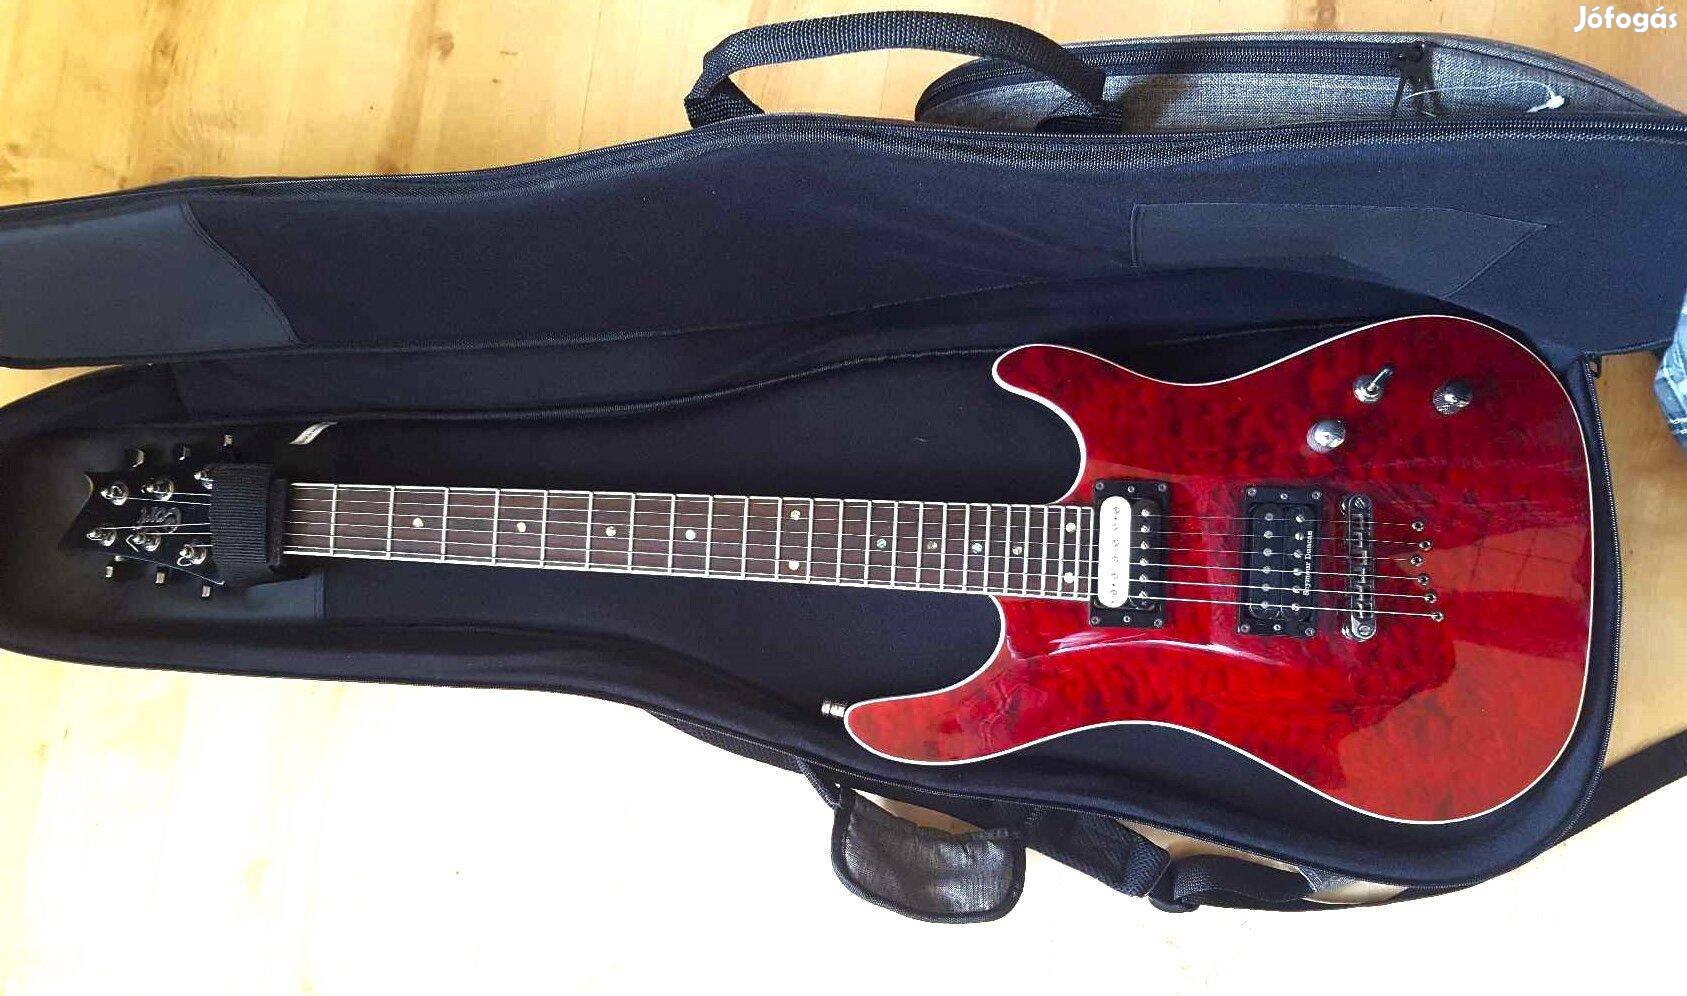 Eladó egy 2011 ben Indonéziában gyártott Cort Kx1Q gitár megkímélt áll